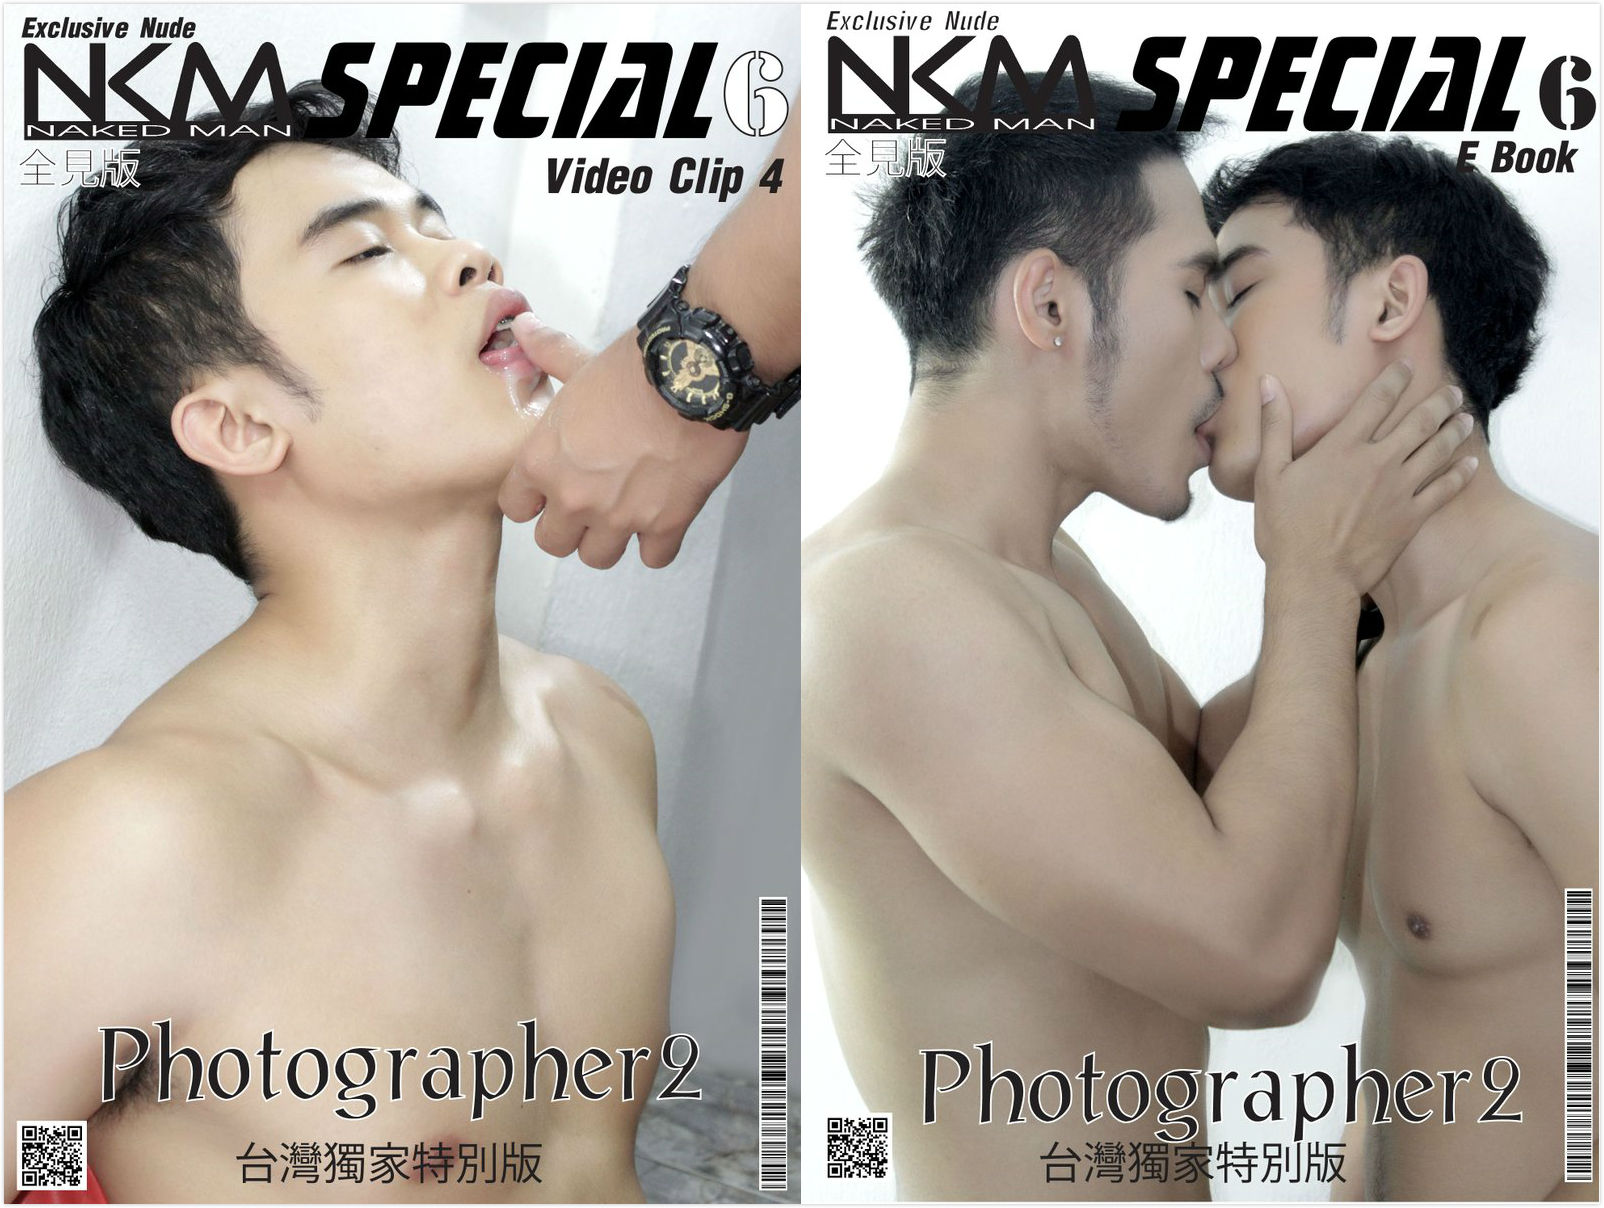 Nkm magazine special no 6